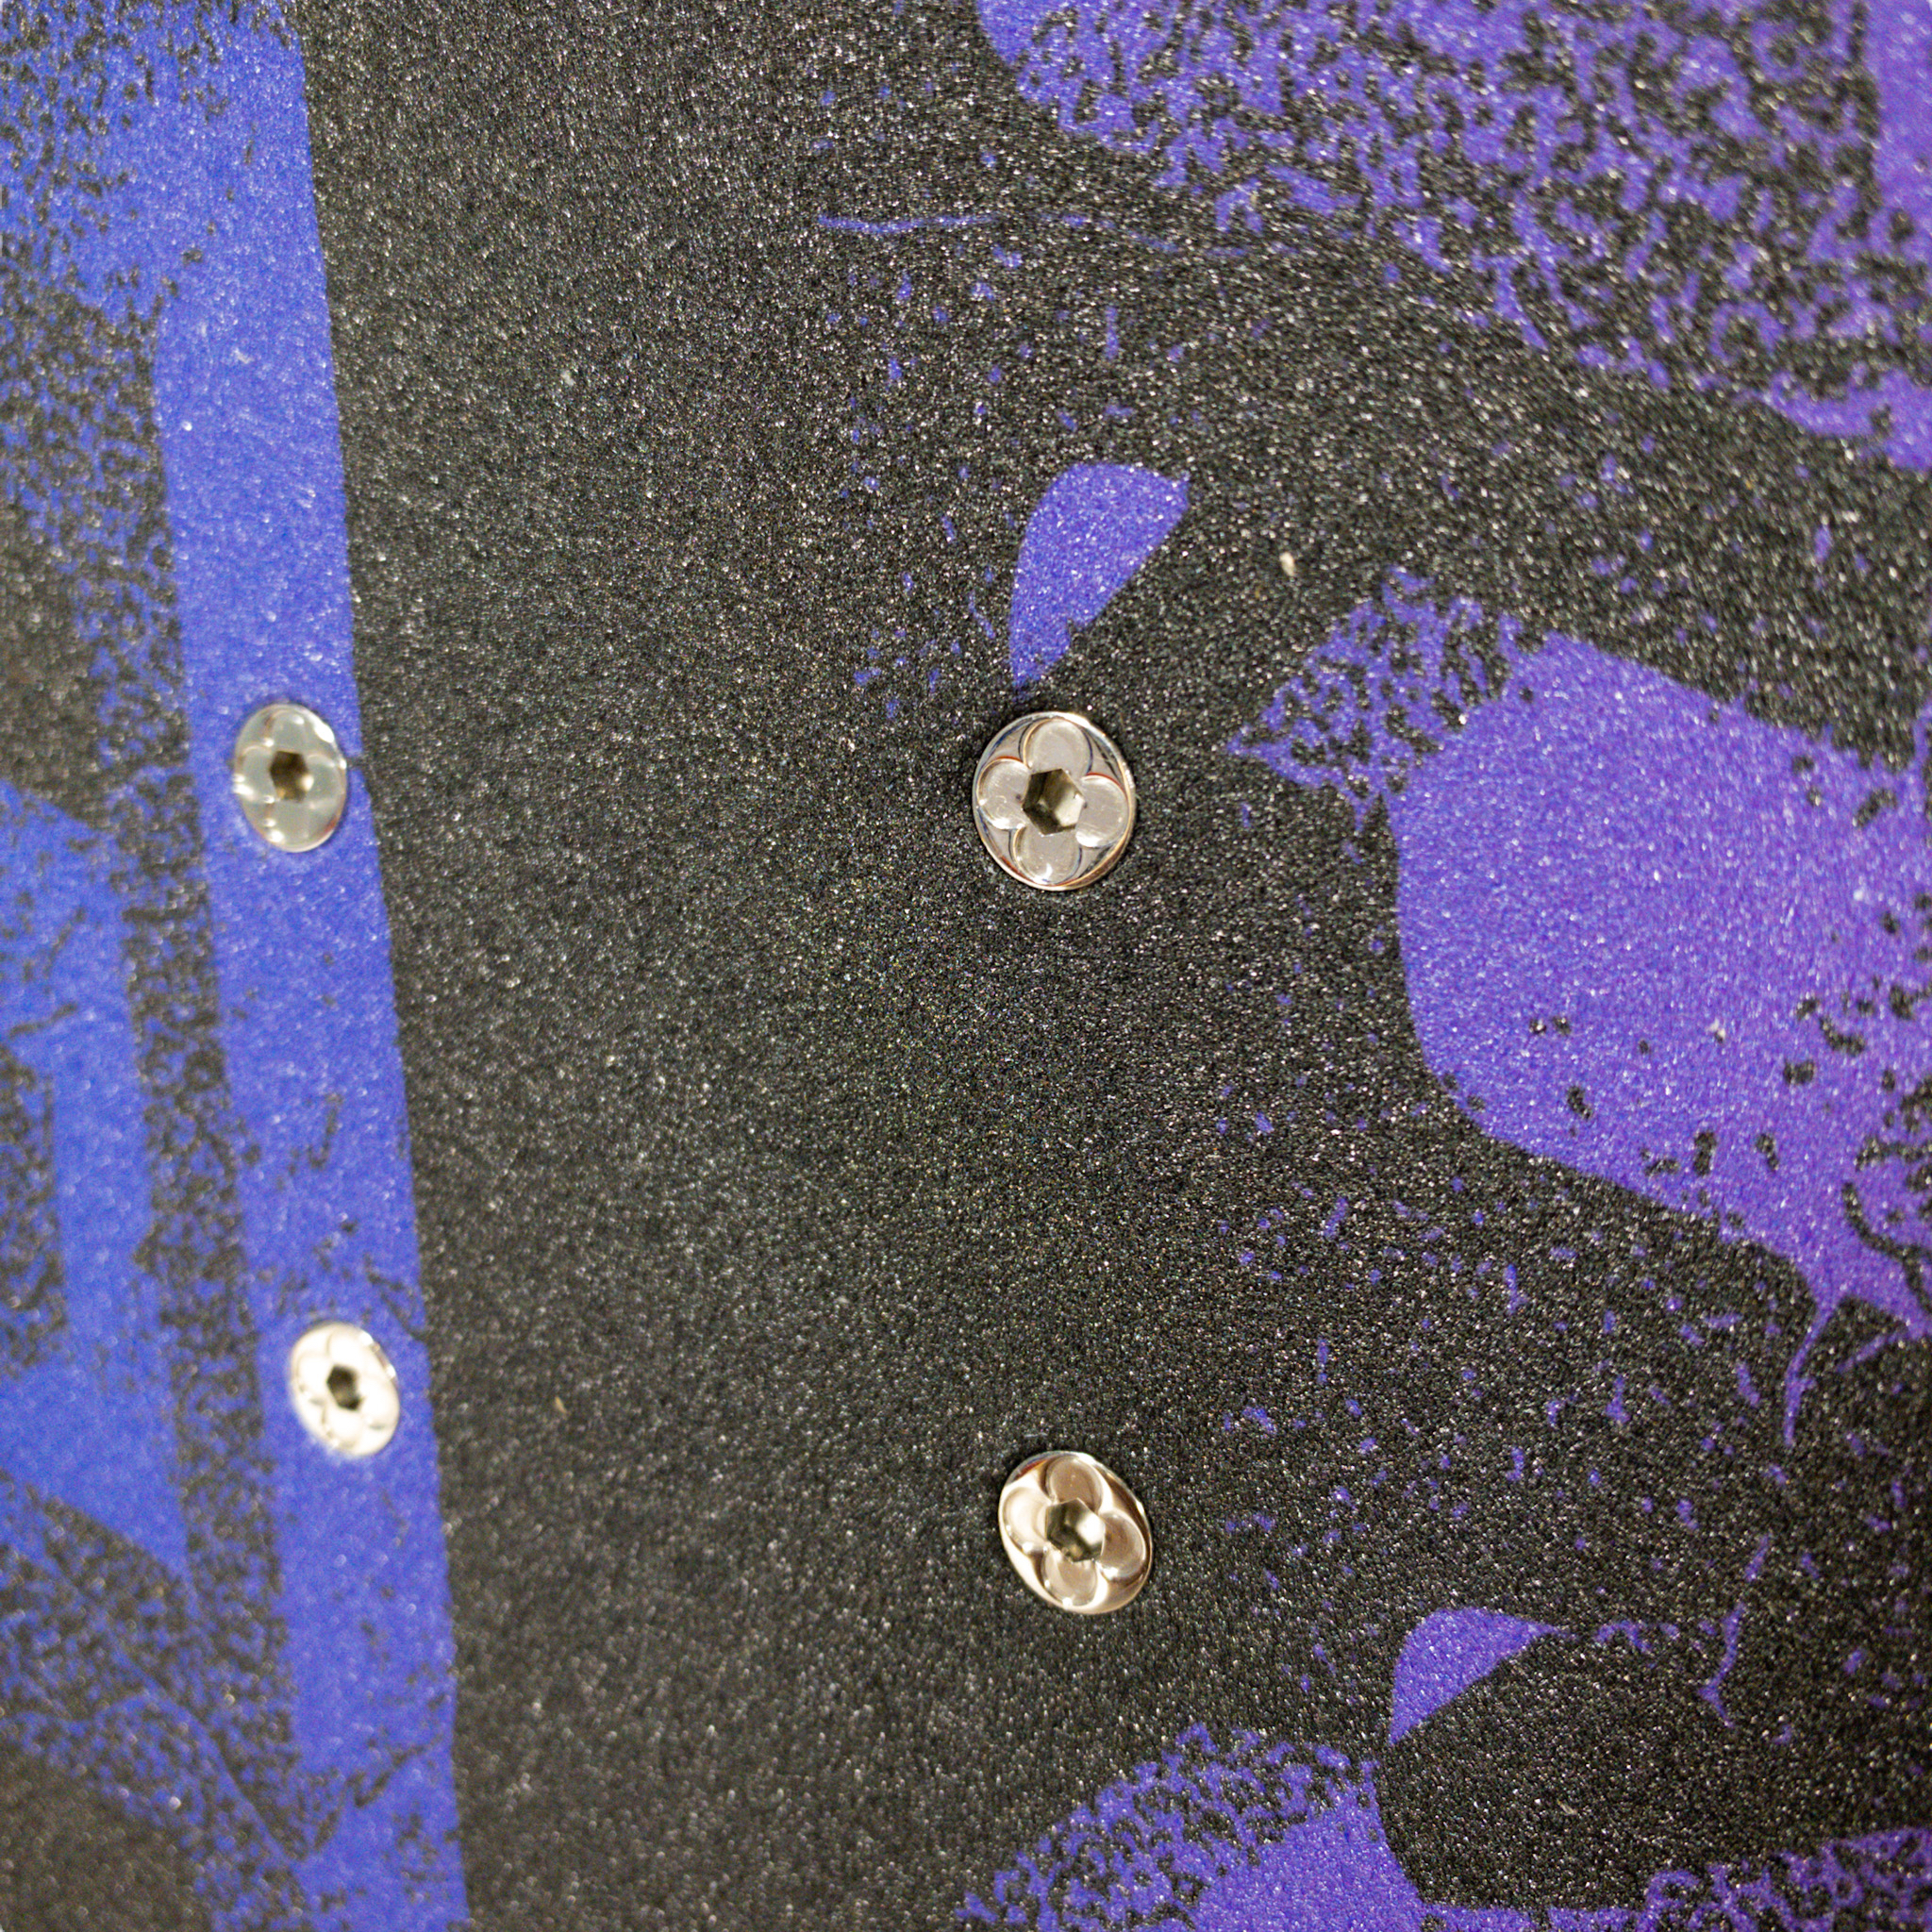 Louis Vuitton Virgil Abloh Neon LV Monogram Skateboard 118lv26 For